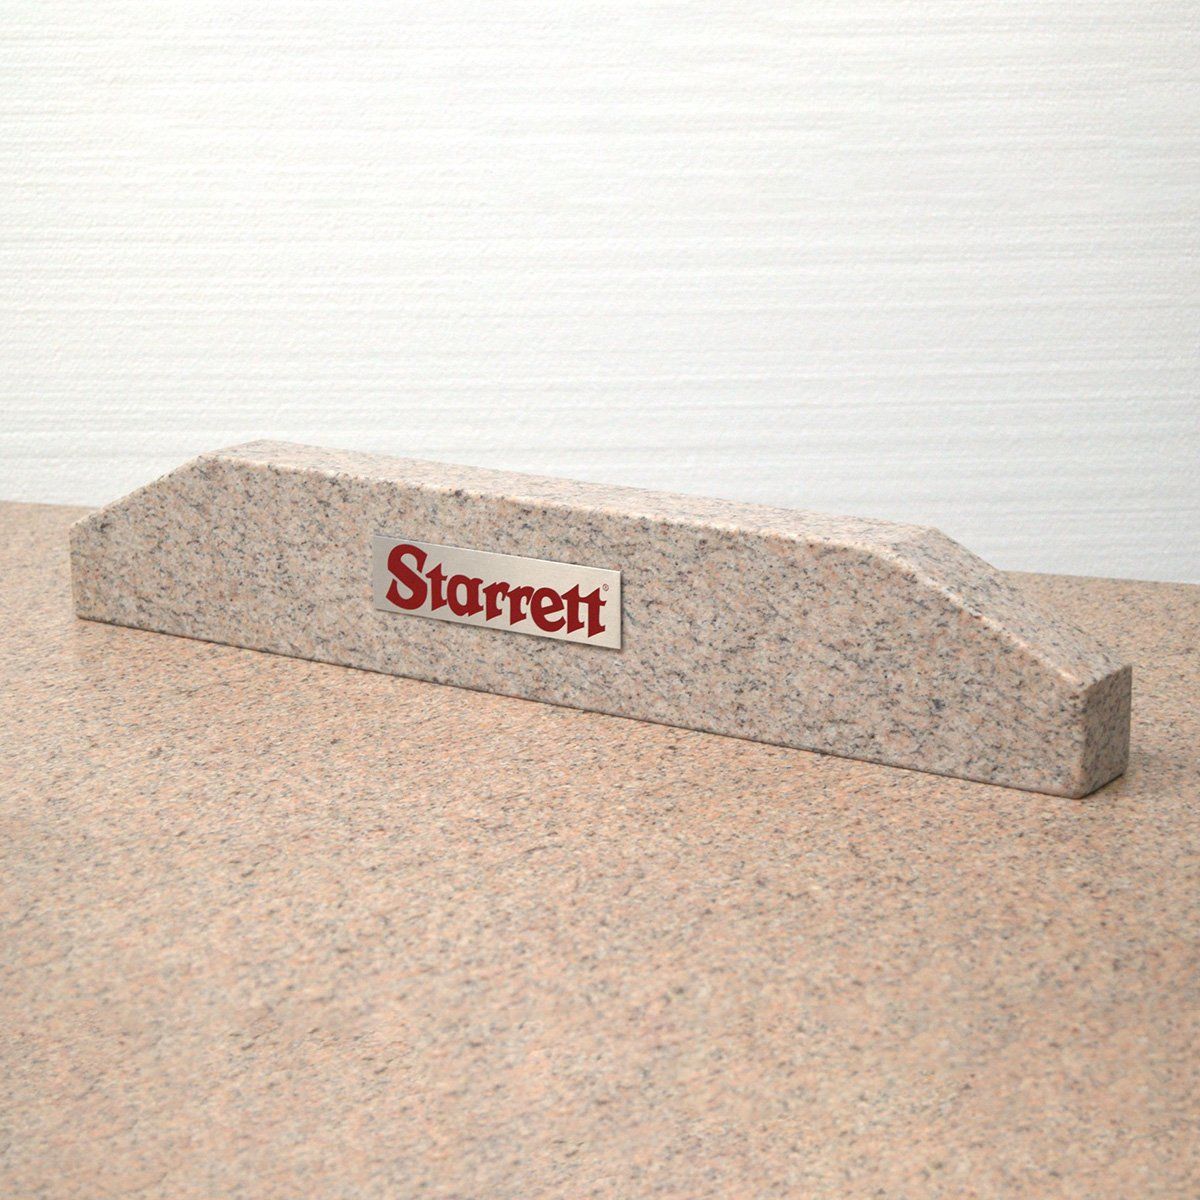 Pink granite straight edge with Starrett logo